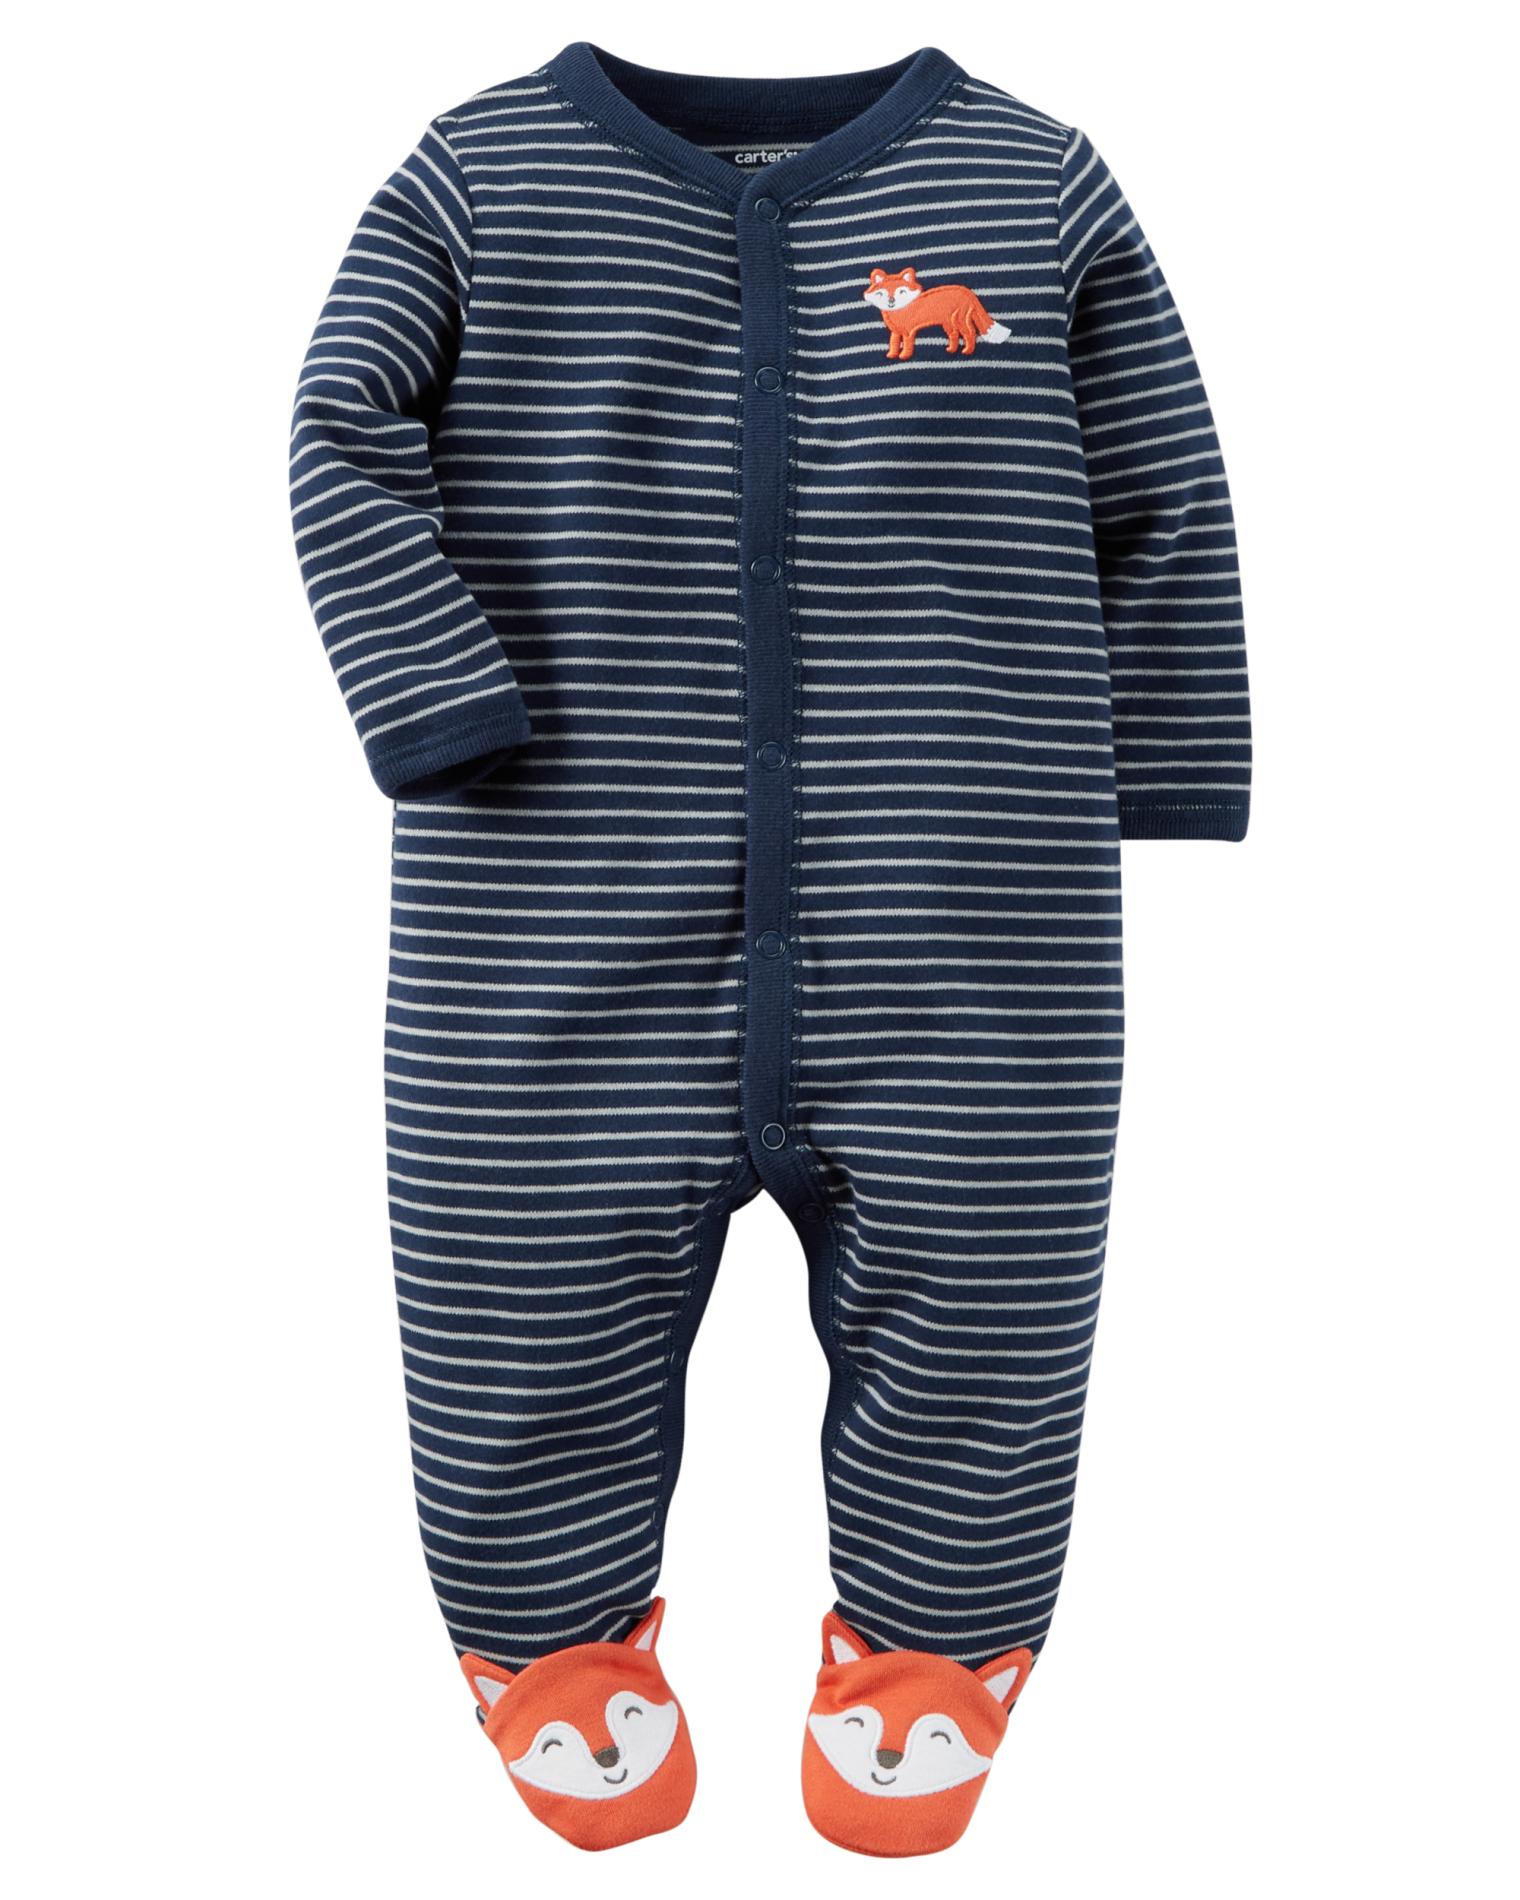 Carter's Newborn Boys' Sleeper Pajamas - Fox